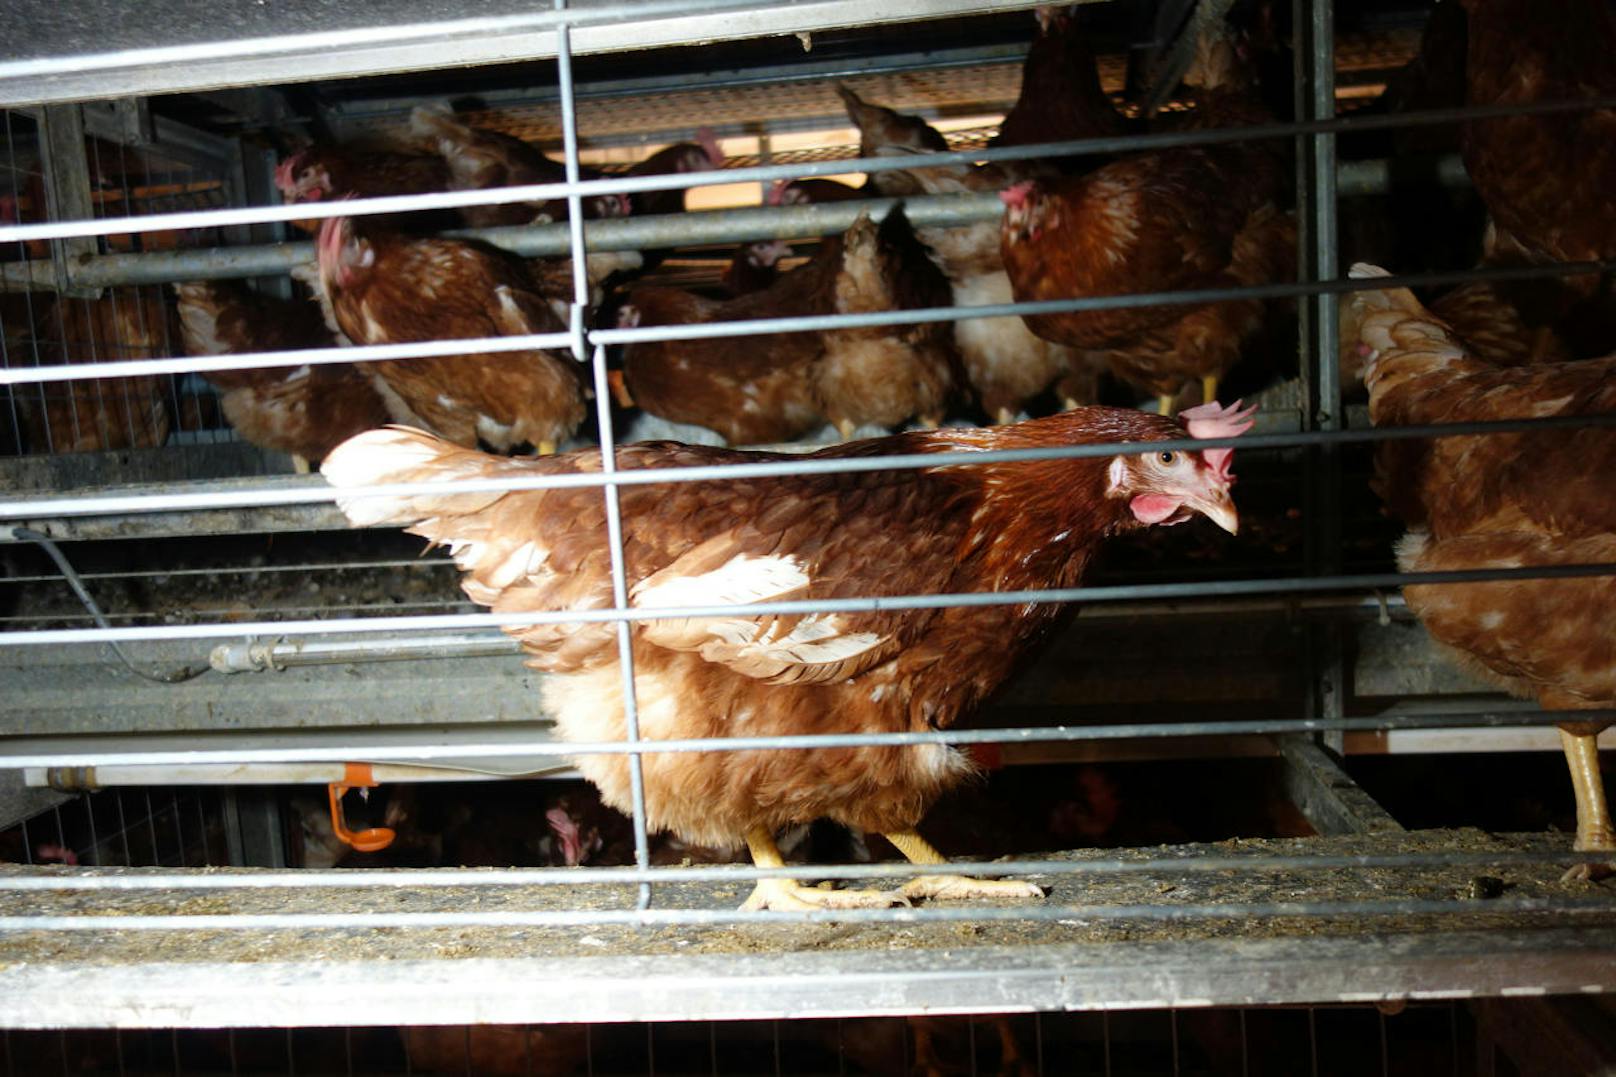 "Ein einfacher Gittermechanismus versperrt den Hühnern permanent den Zugang zum Stallboden und macht aus der angeblichen Bodenhaltung eine illegale Käfighaltung.", erklärt Richter vom VGT.